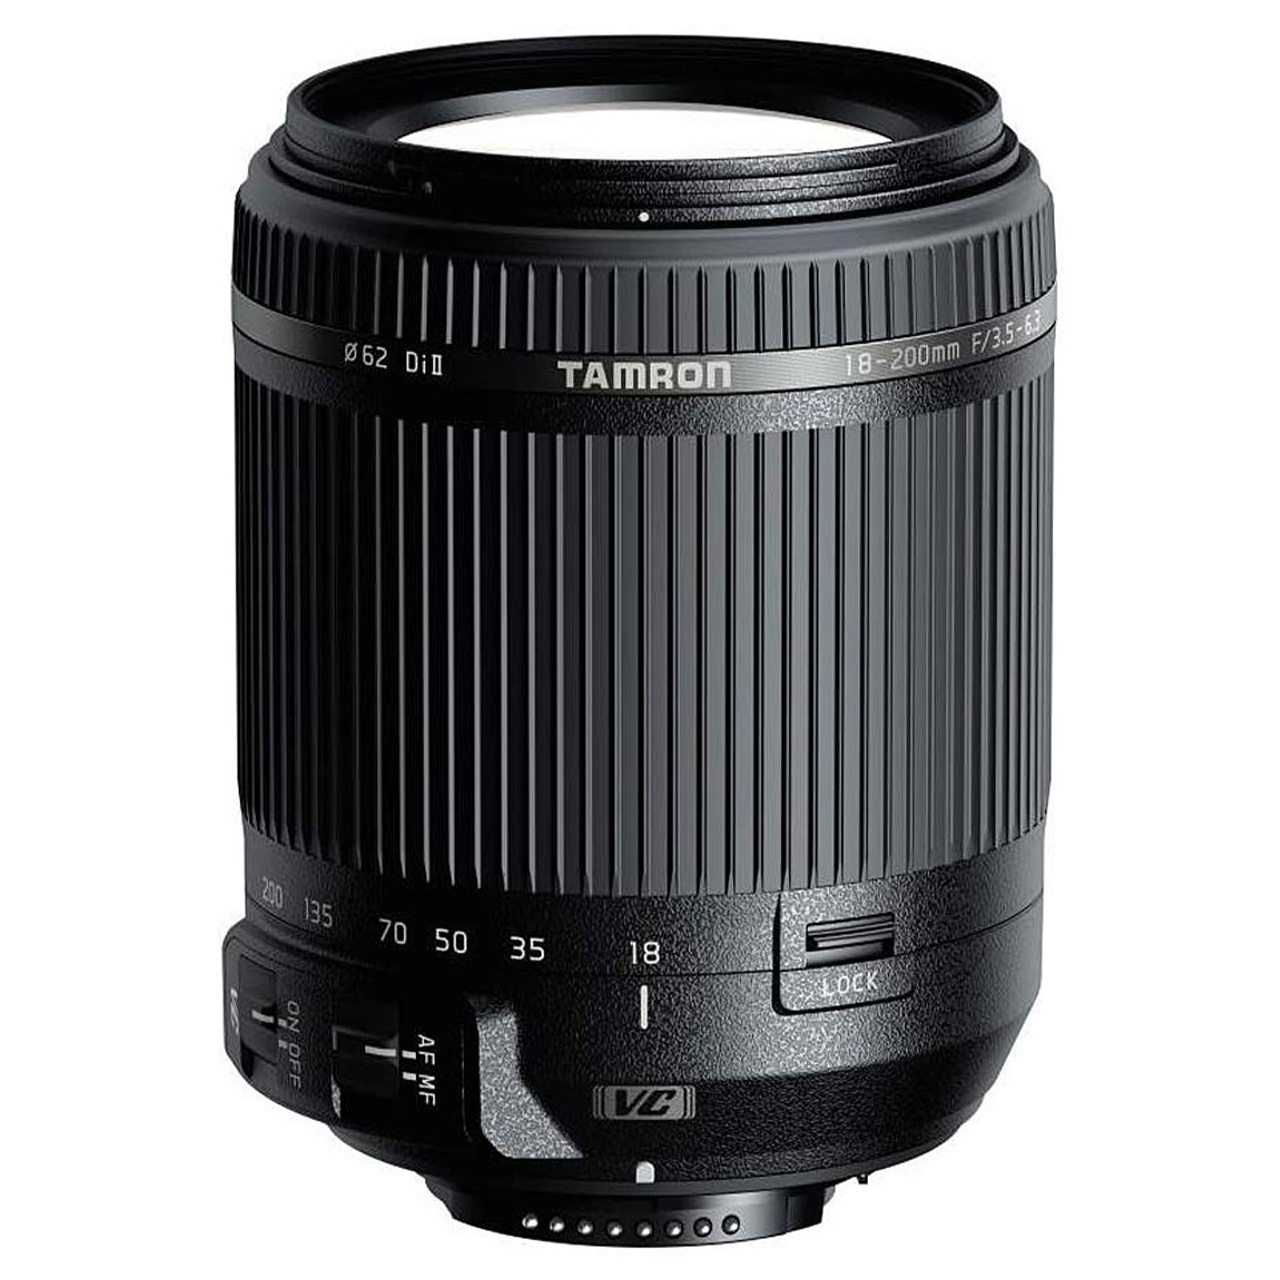 لنز تامرون مدل 18-200mm F/3.5-6.3 Di II VC مناسب برای دوربین های نیکون